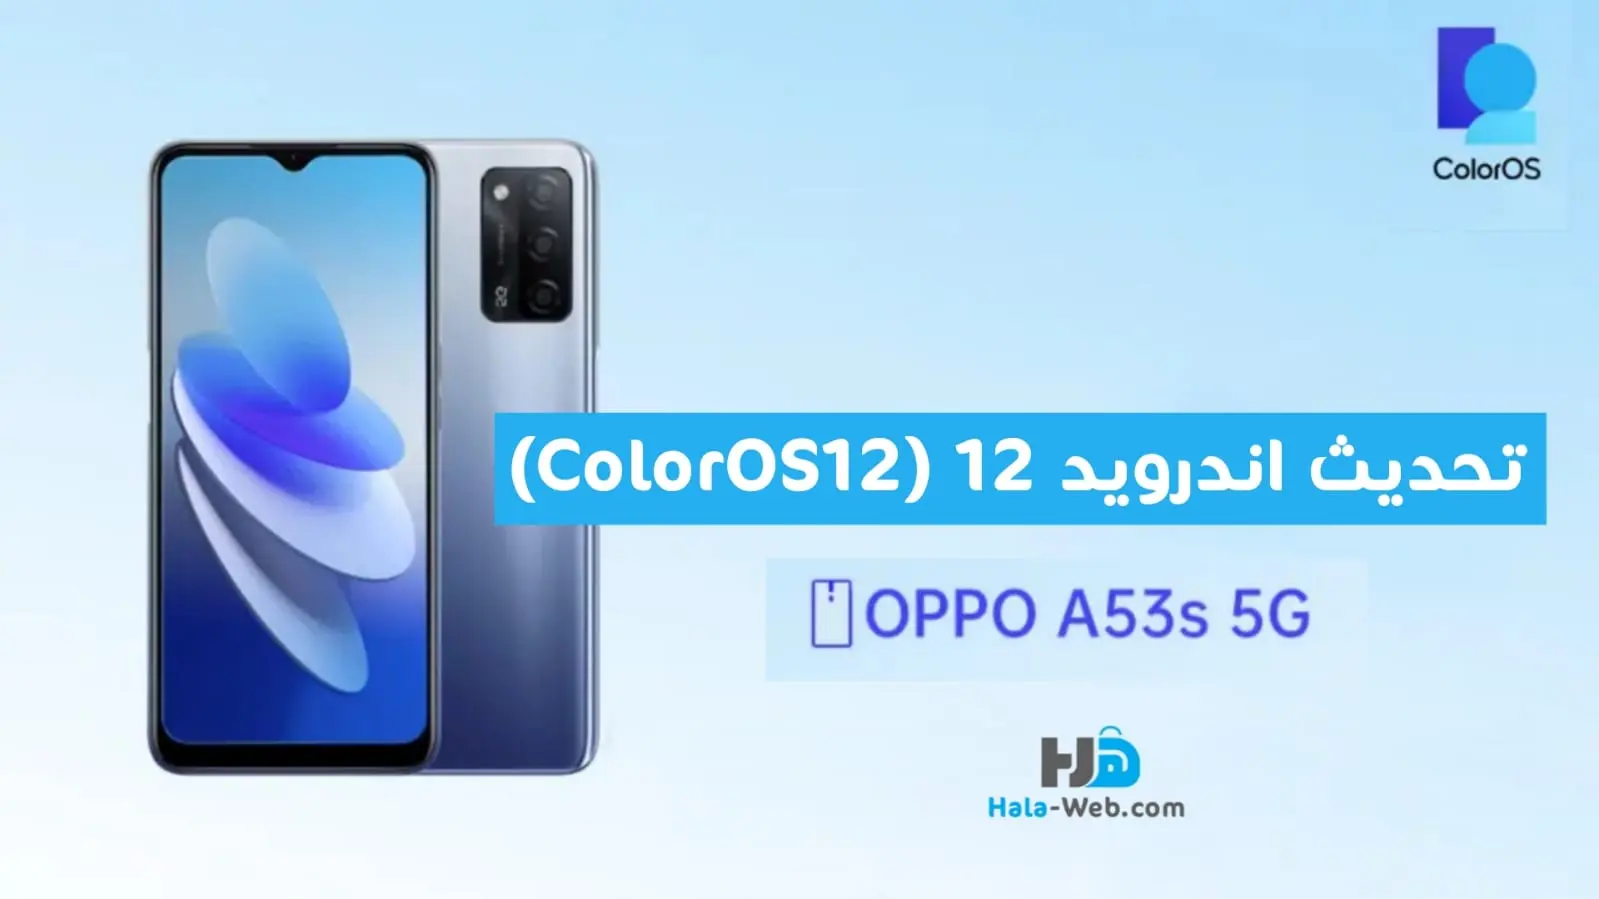 تحديث اندرويد 12 (ColorOS 12) لهاتف اوبو Oppo A53s 5G